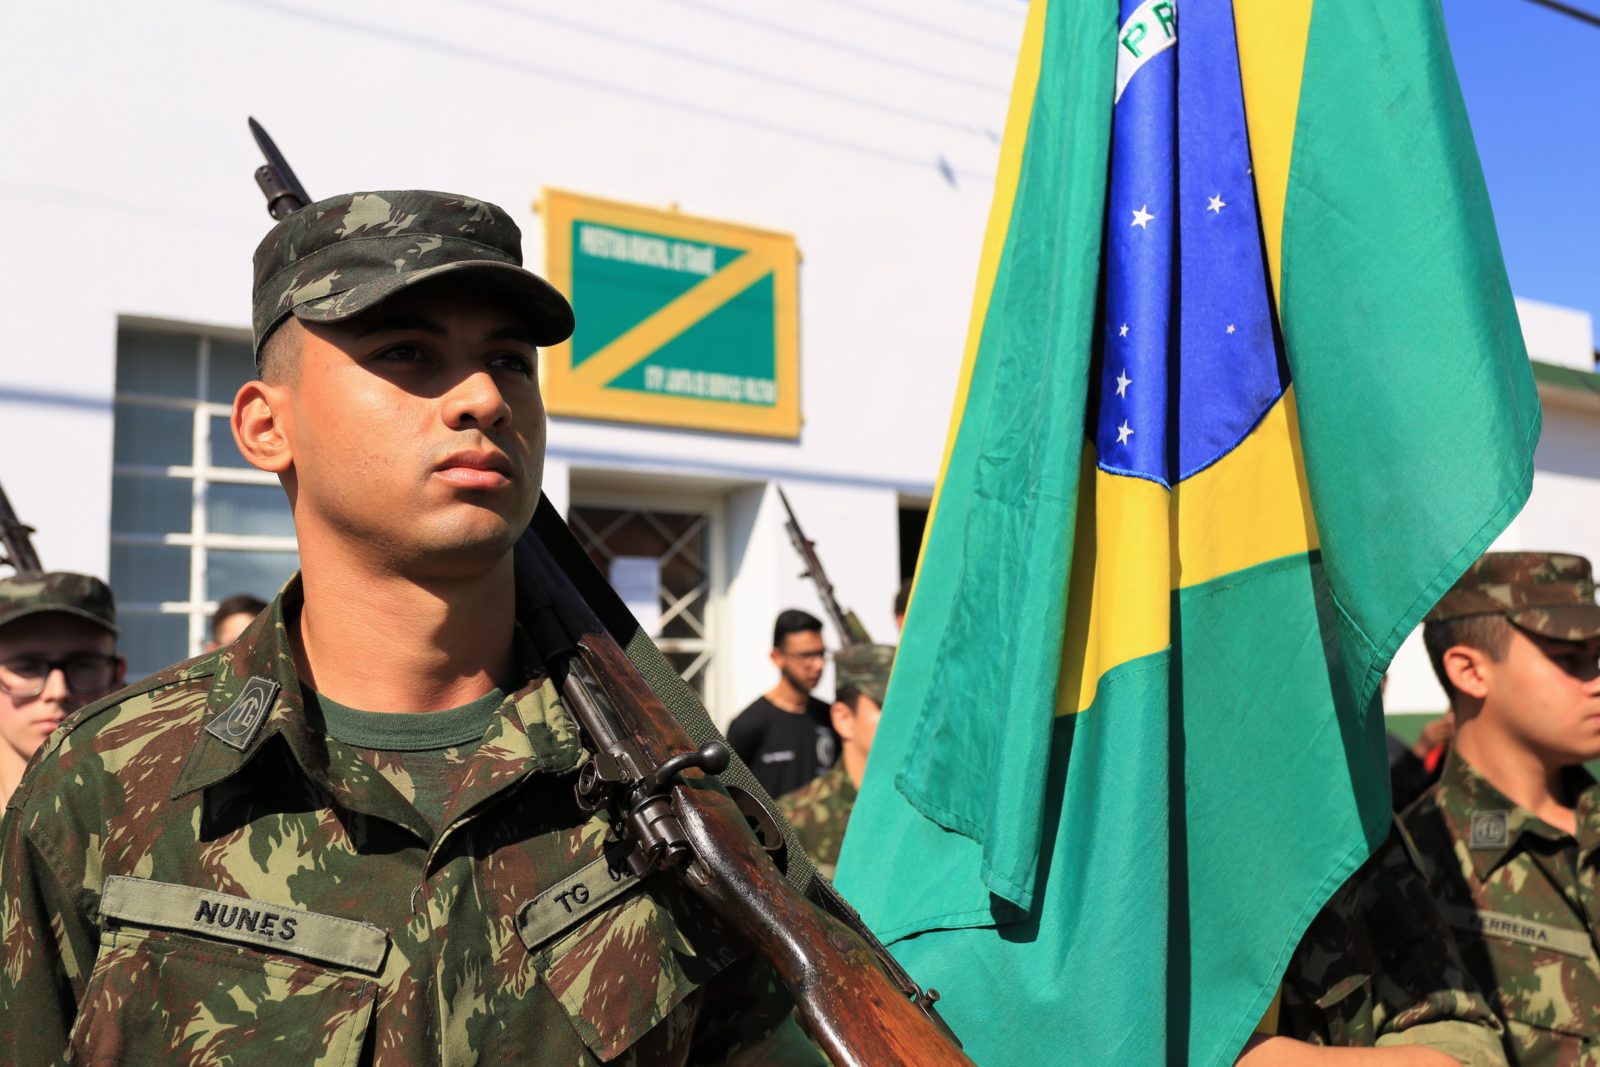 Tiro de Guerra de Itararé (SP) realiza solenidade em comemoração ao Dia da Bandeira